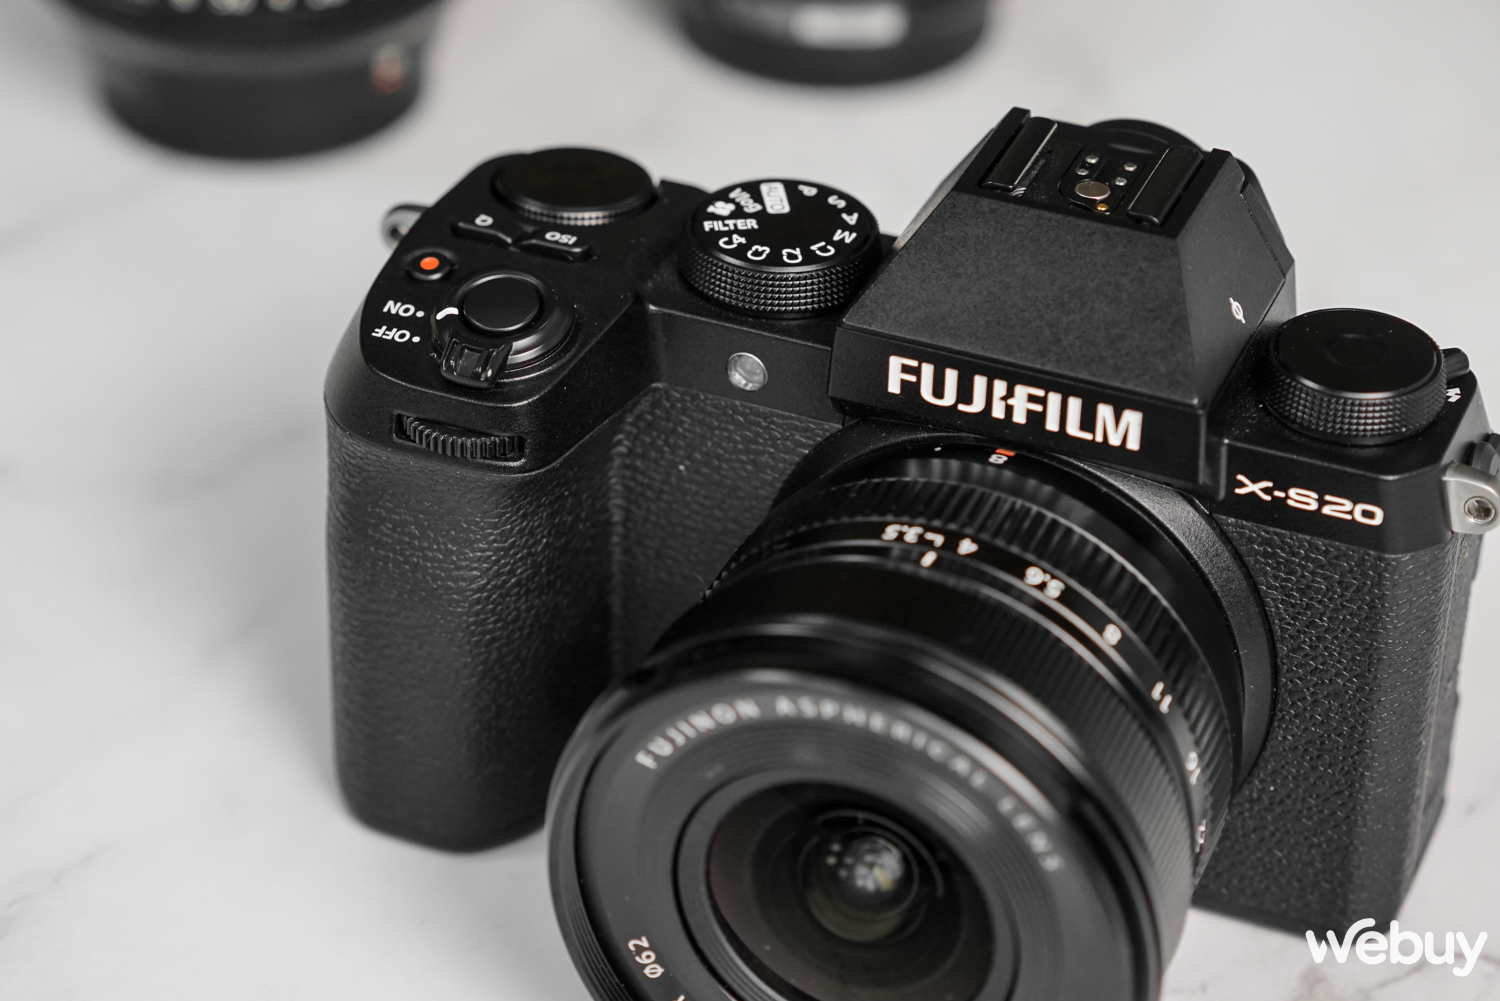 Ra đường chụp ảnh với Fujifilm X-S20: Không còn là dòng máy 'nhập môn' - Ảnh 3.